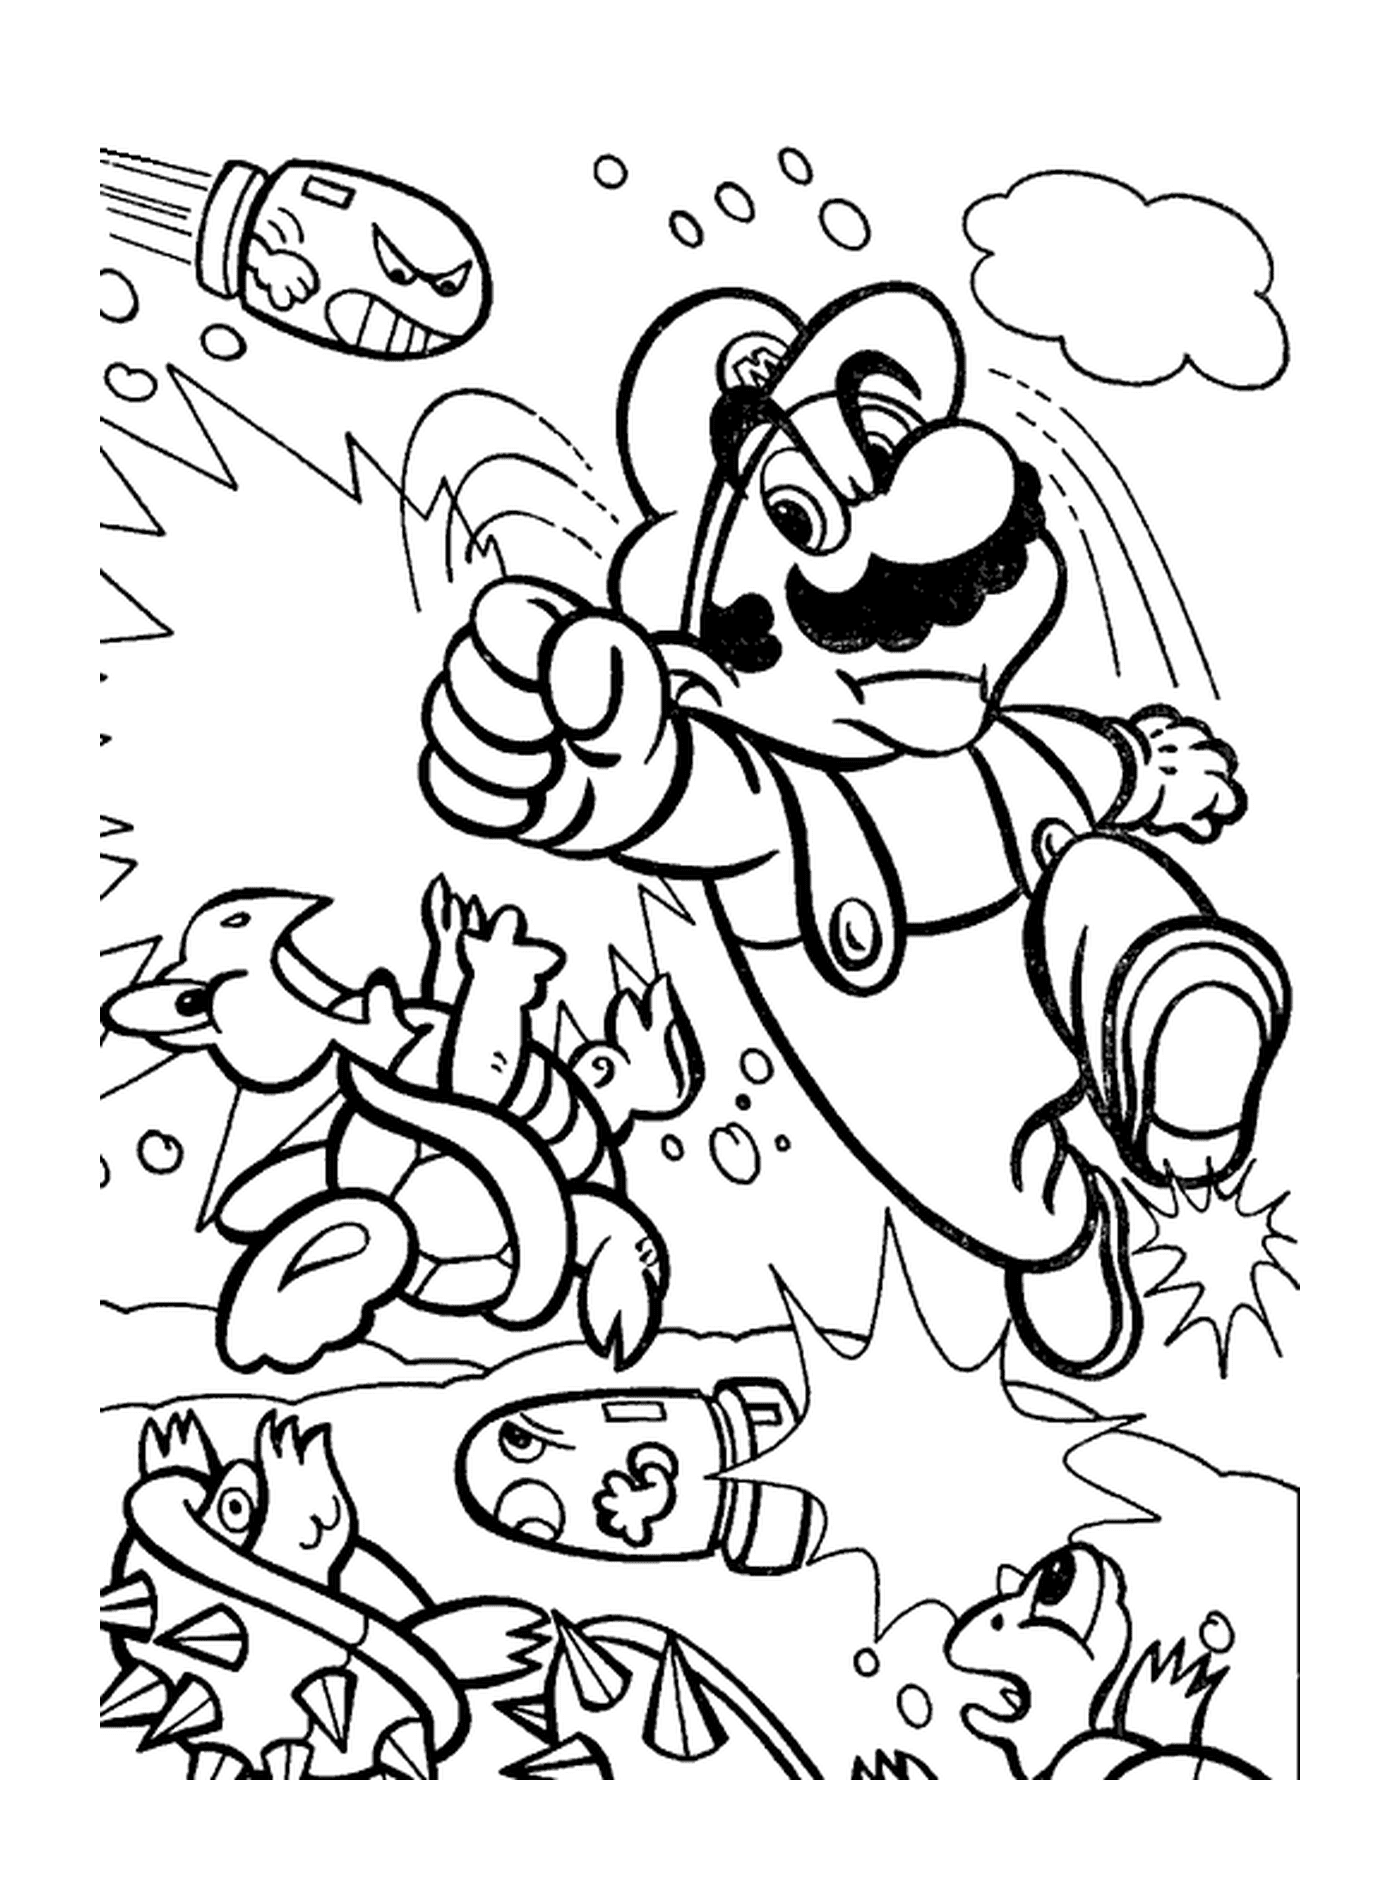  Mario combatte saltando in aria 